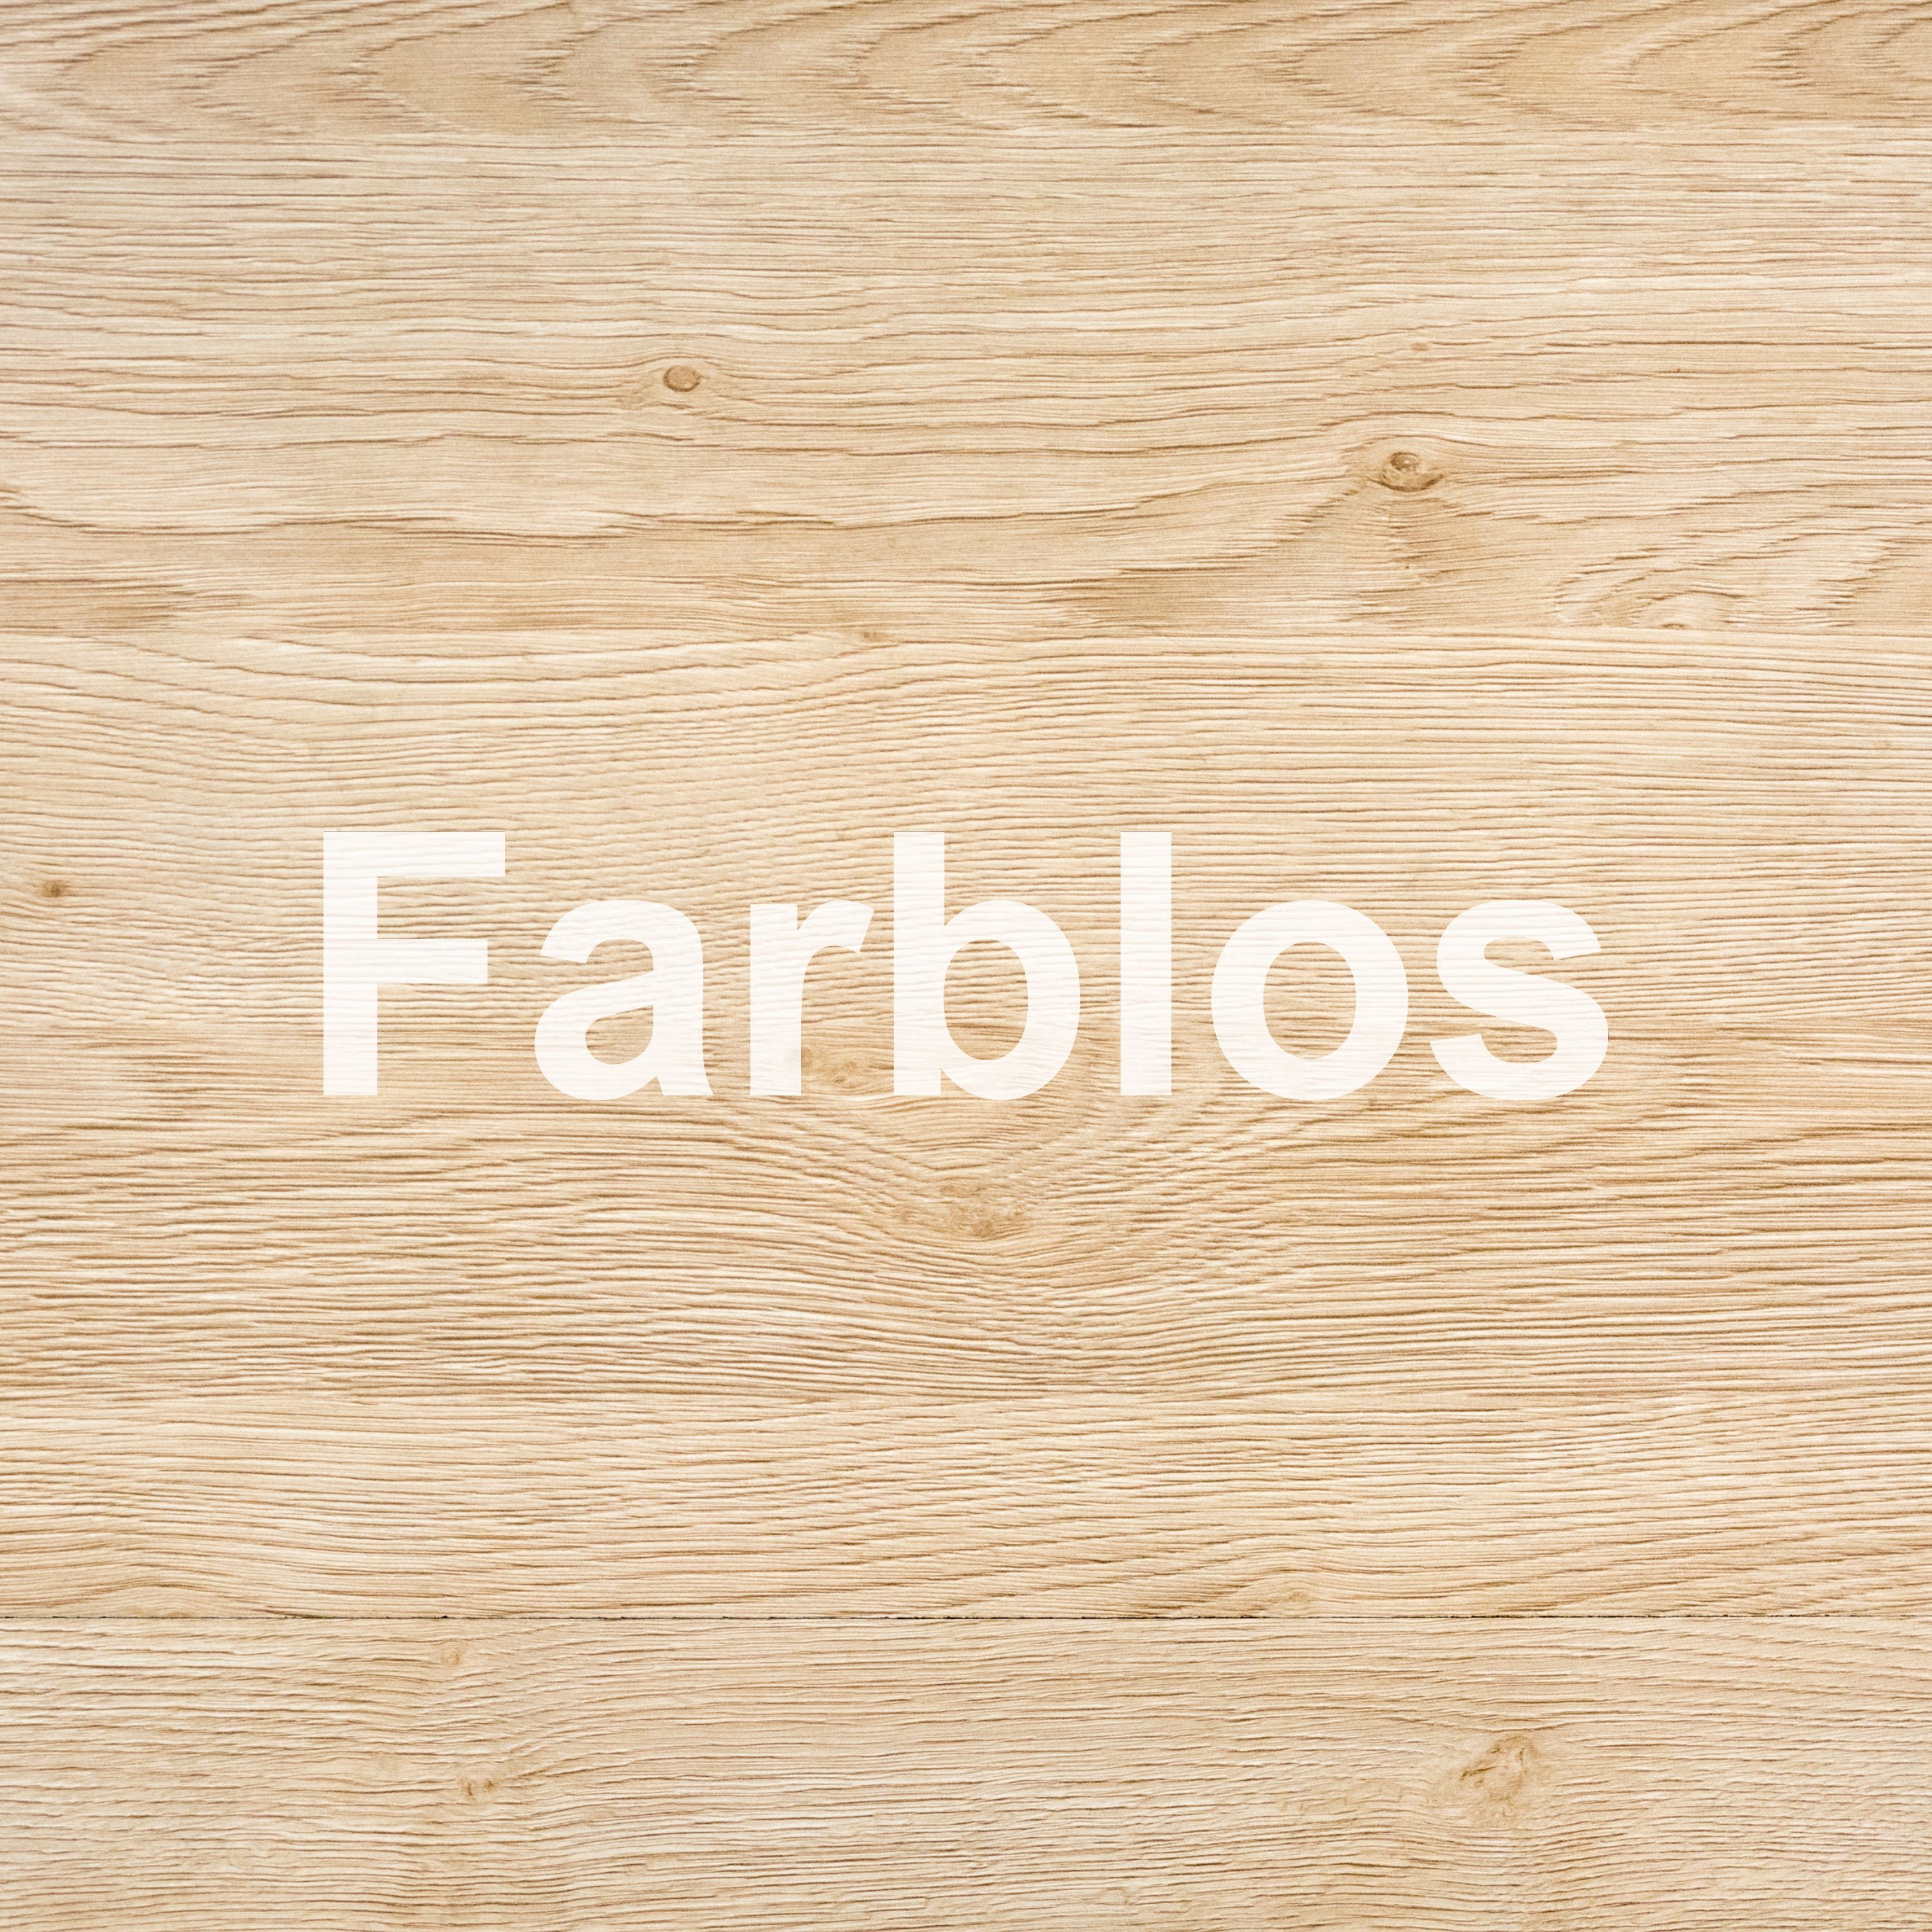 #Farbe_Farblos